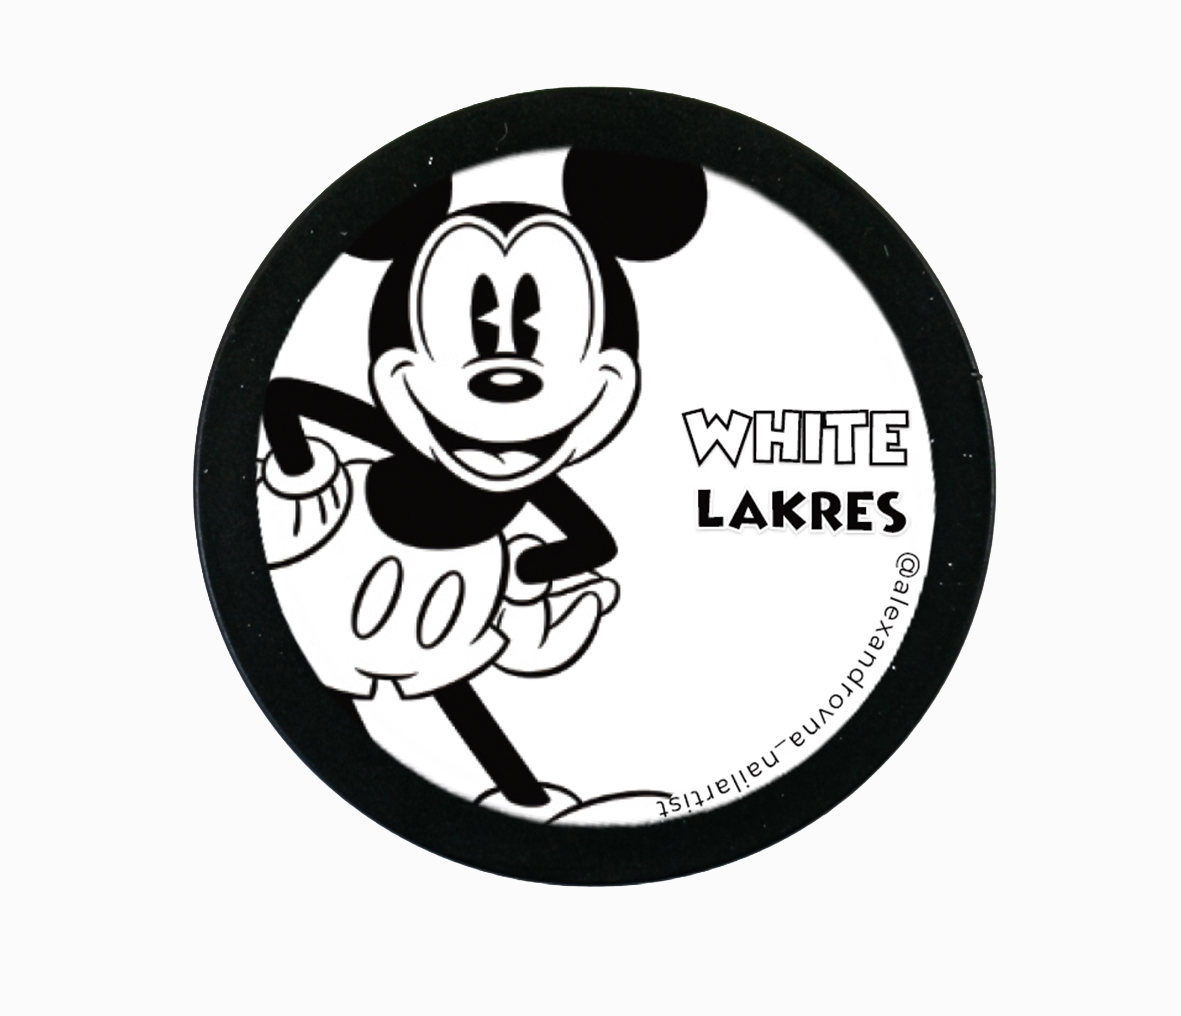 Гель-паста Mickey Mouse (White) 5g  LR9281 оснастка для круглой печати карманная colop stamp mouse r40 диаметр 40 мм корпус синий